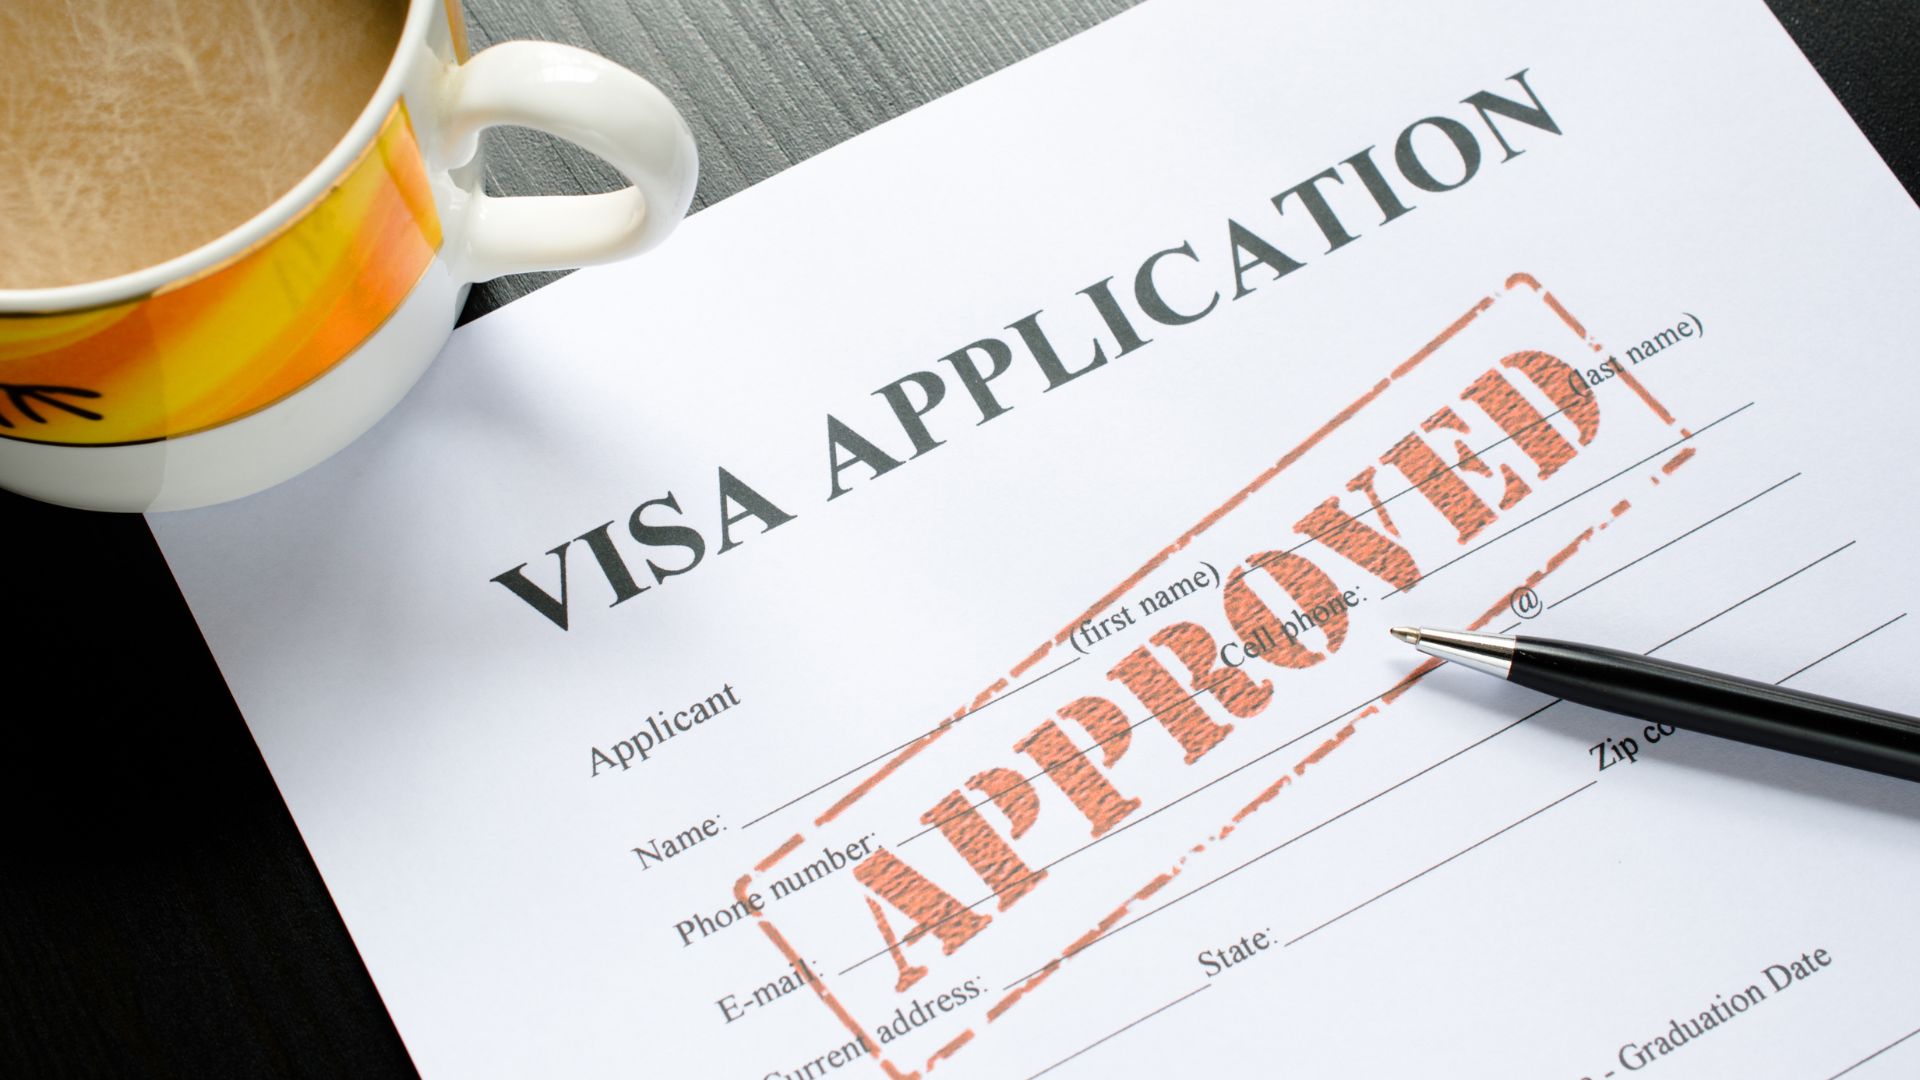 Britse visums word eksklusief deur VFS Global verwerk